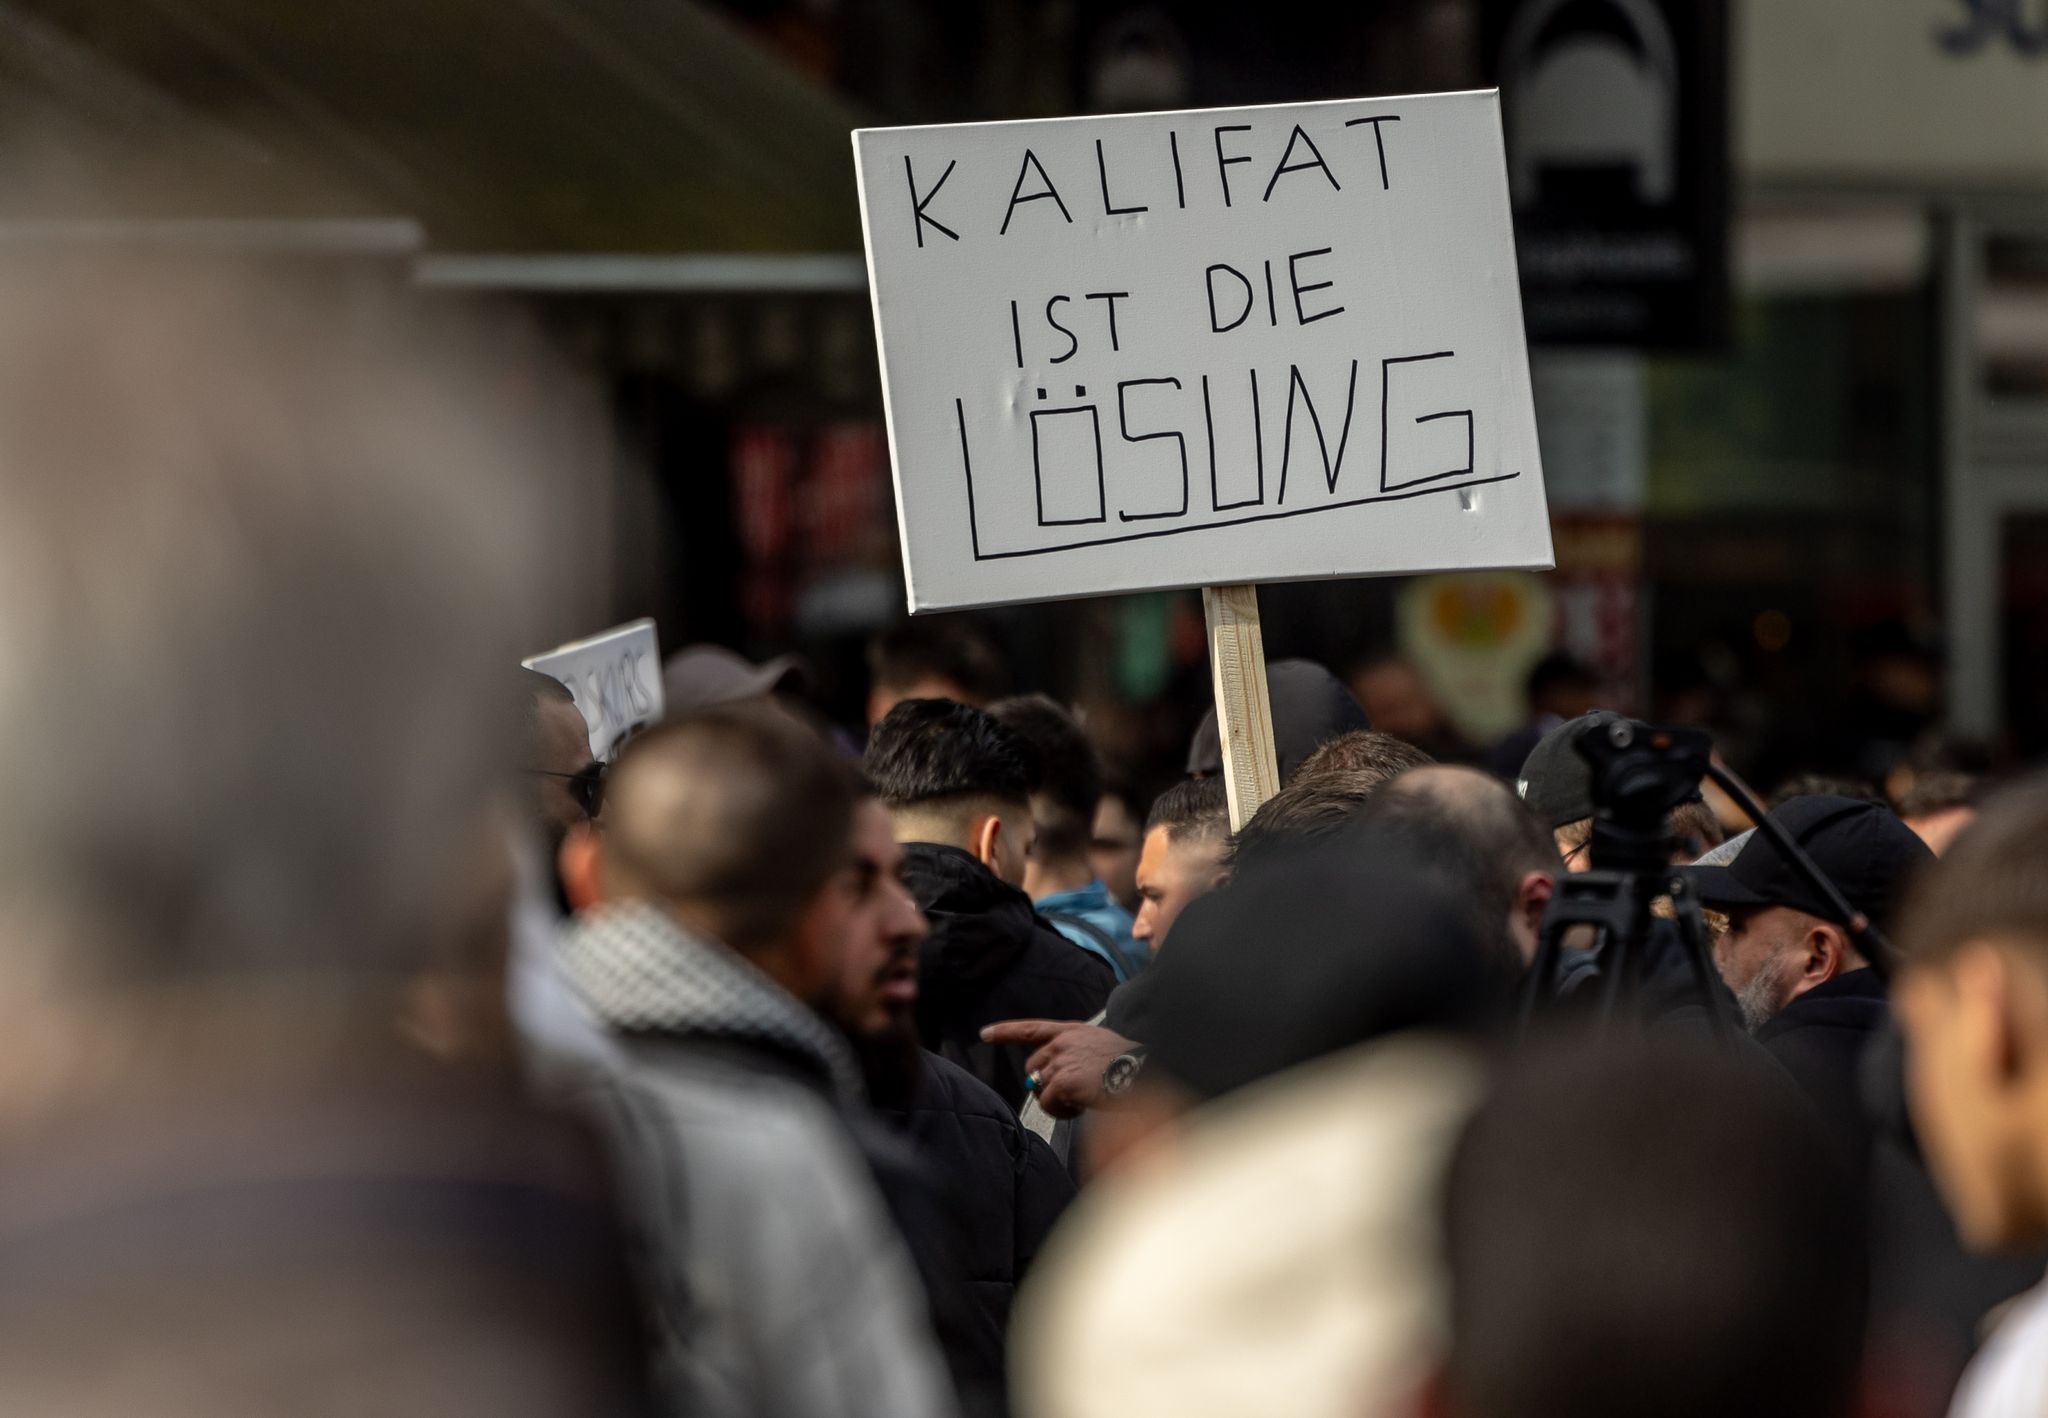 Teilnehmer einer Islamisten-Demo hielten bei der Demonstration am 27. April unter anderem ein Plakat mit der Aufschrift «Kalifat ist die Lösung» in die Höhe.